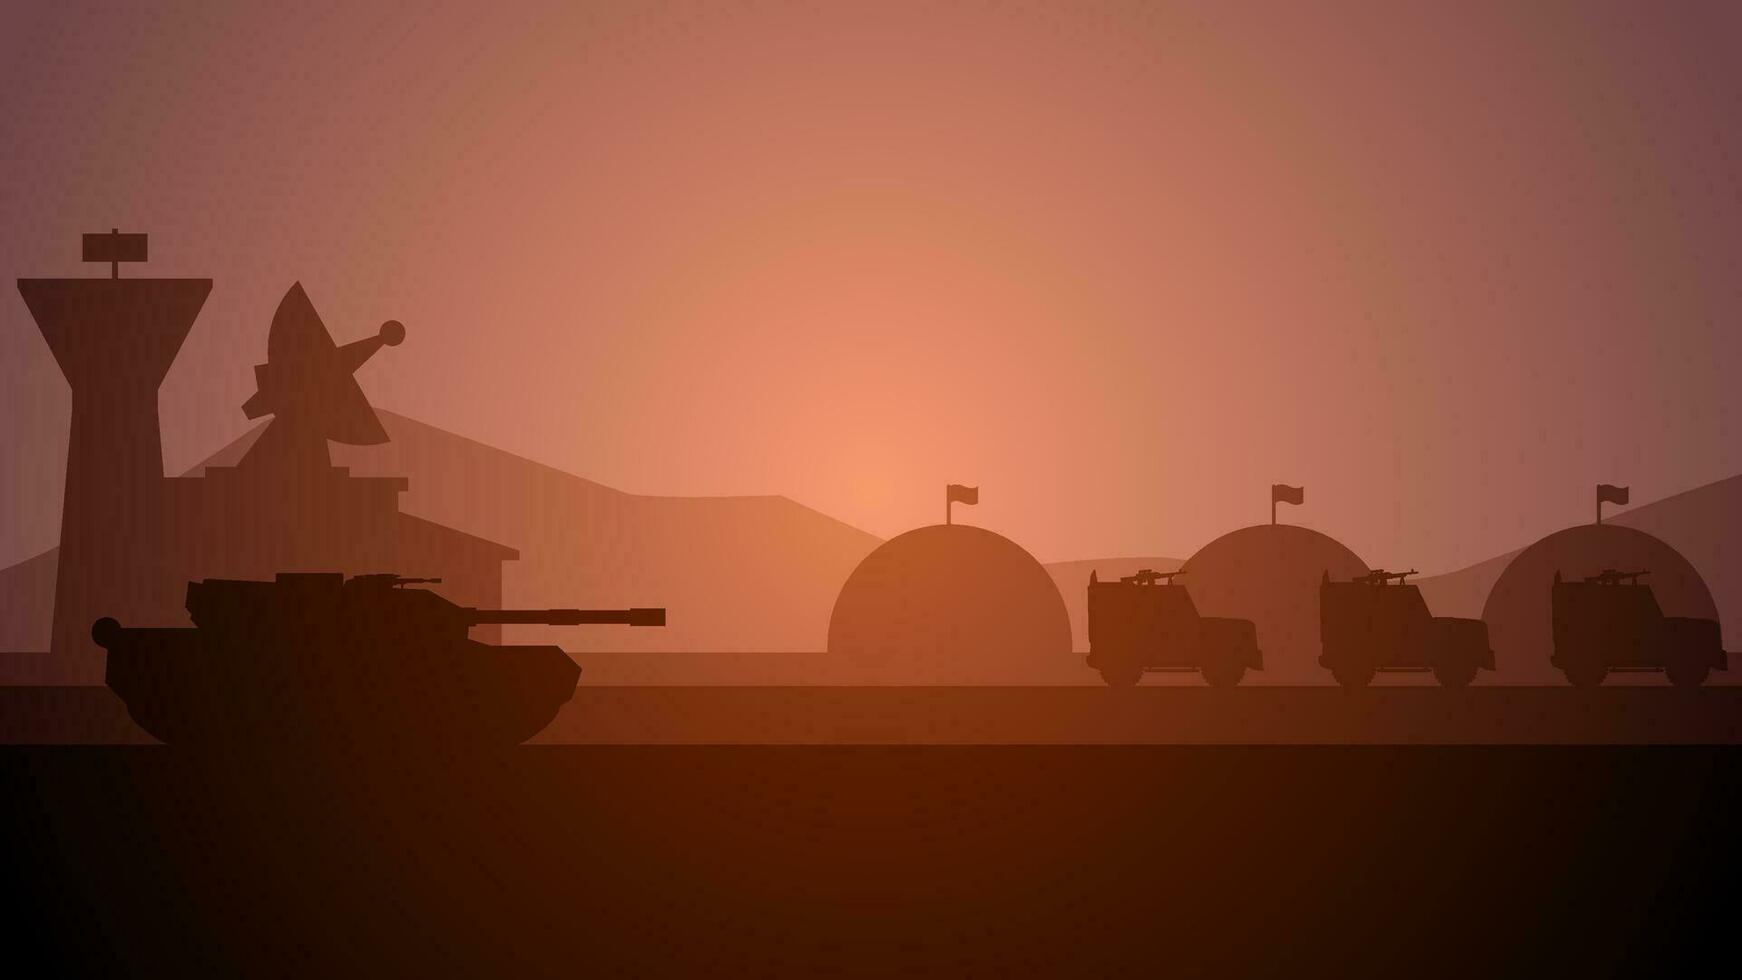 Militär- Base Landschaft Vektor Illustration. Silhouette von beim Militär- Base mit Panzer und gepanzert Fahrzeuge. Militär- Landschaft zum Hintergrund, Hintergrund oder Illustration